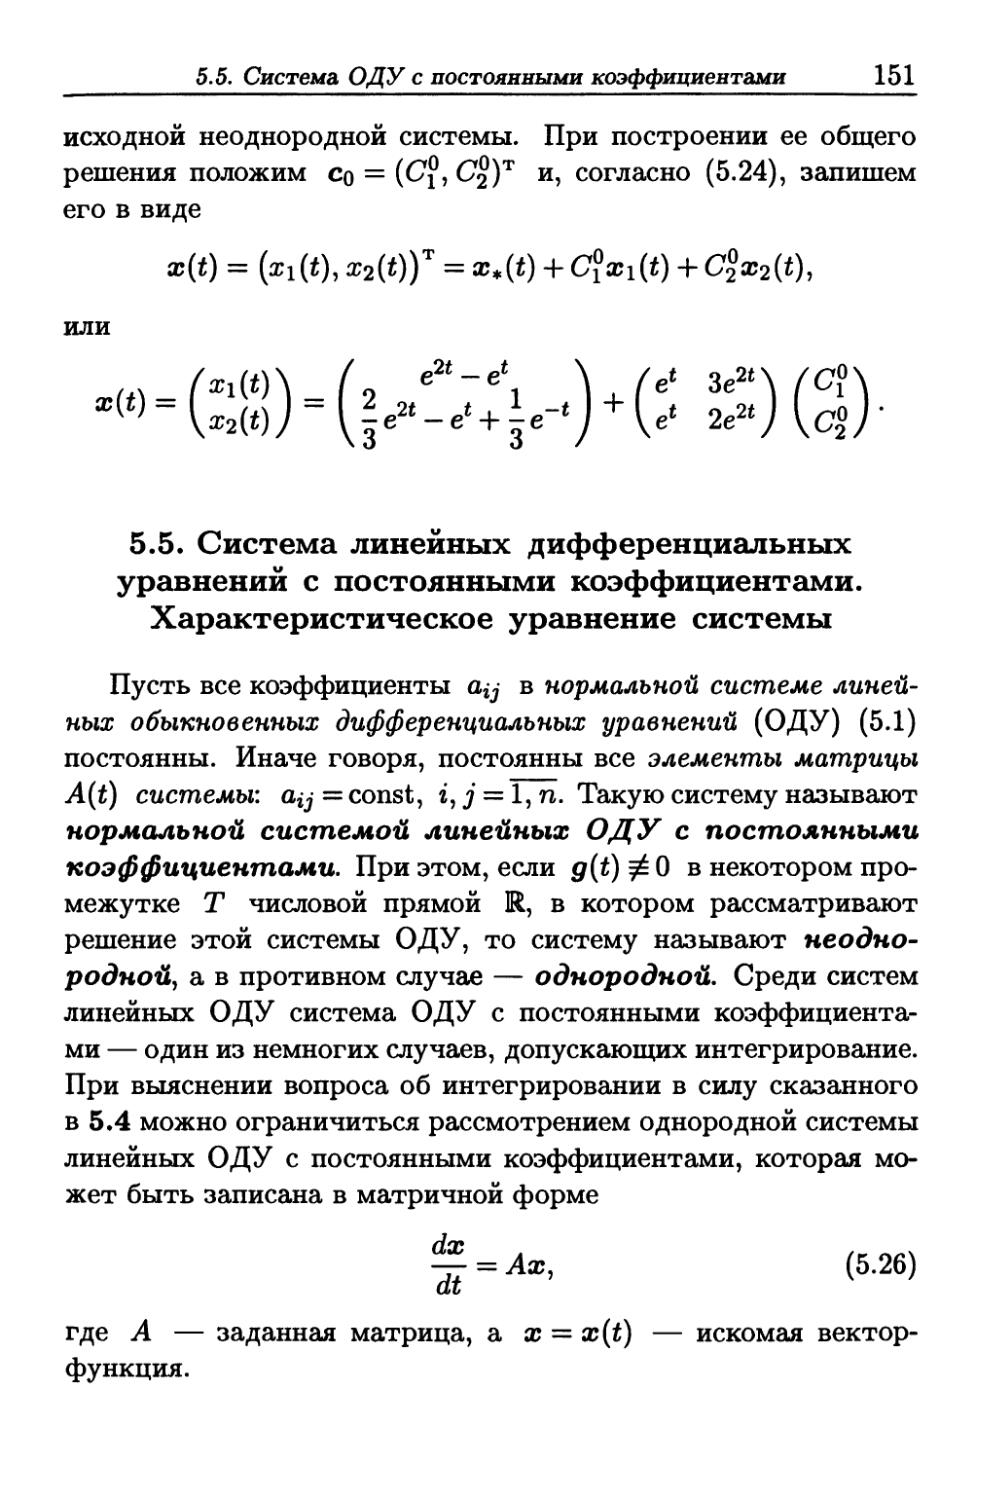 5.5. Система линейных дифференциальных уравнений с постоянными коэффициентами. Характеристическое уравнение системы